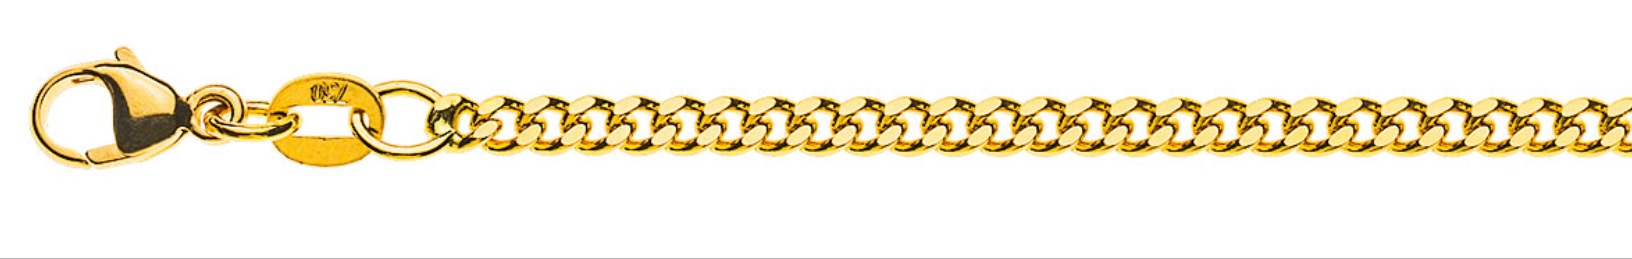 AURONOS Prestige Halskette Gelbgold 18K Panzerkette geschliffen 60cm 2.6mm